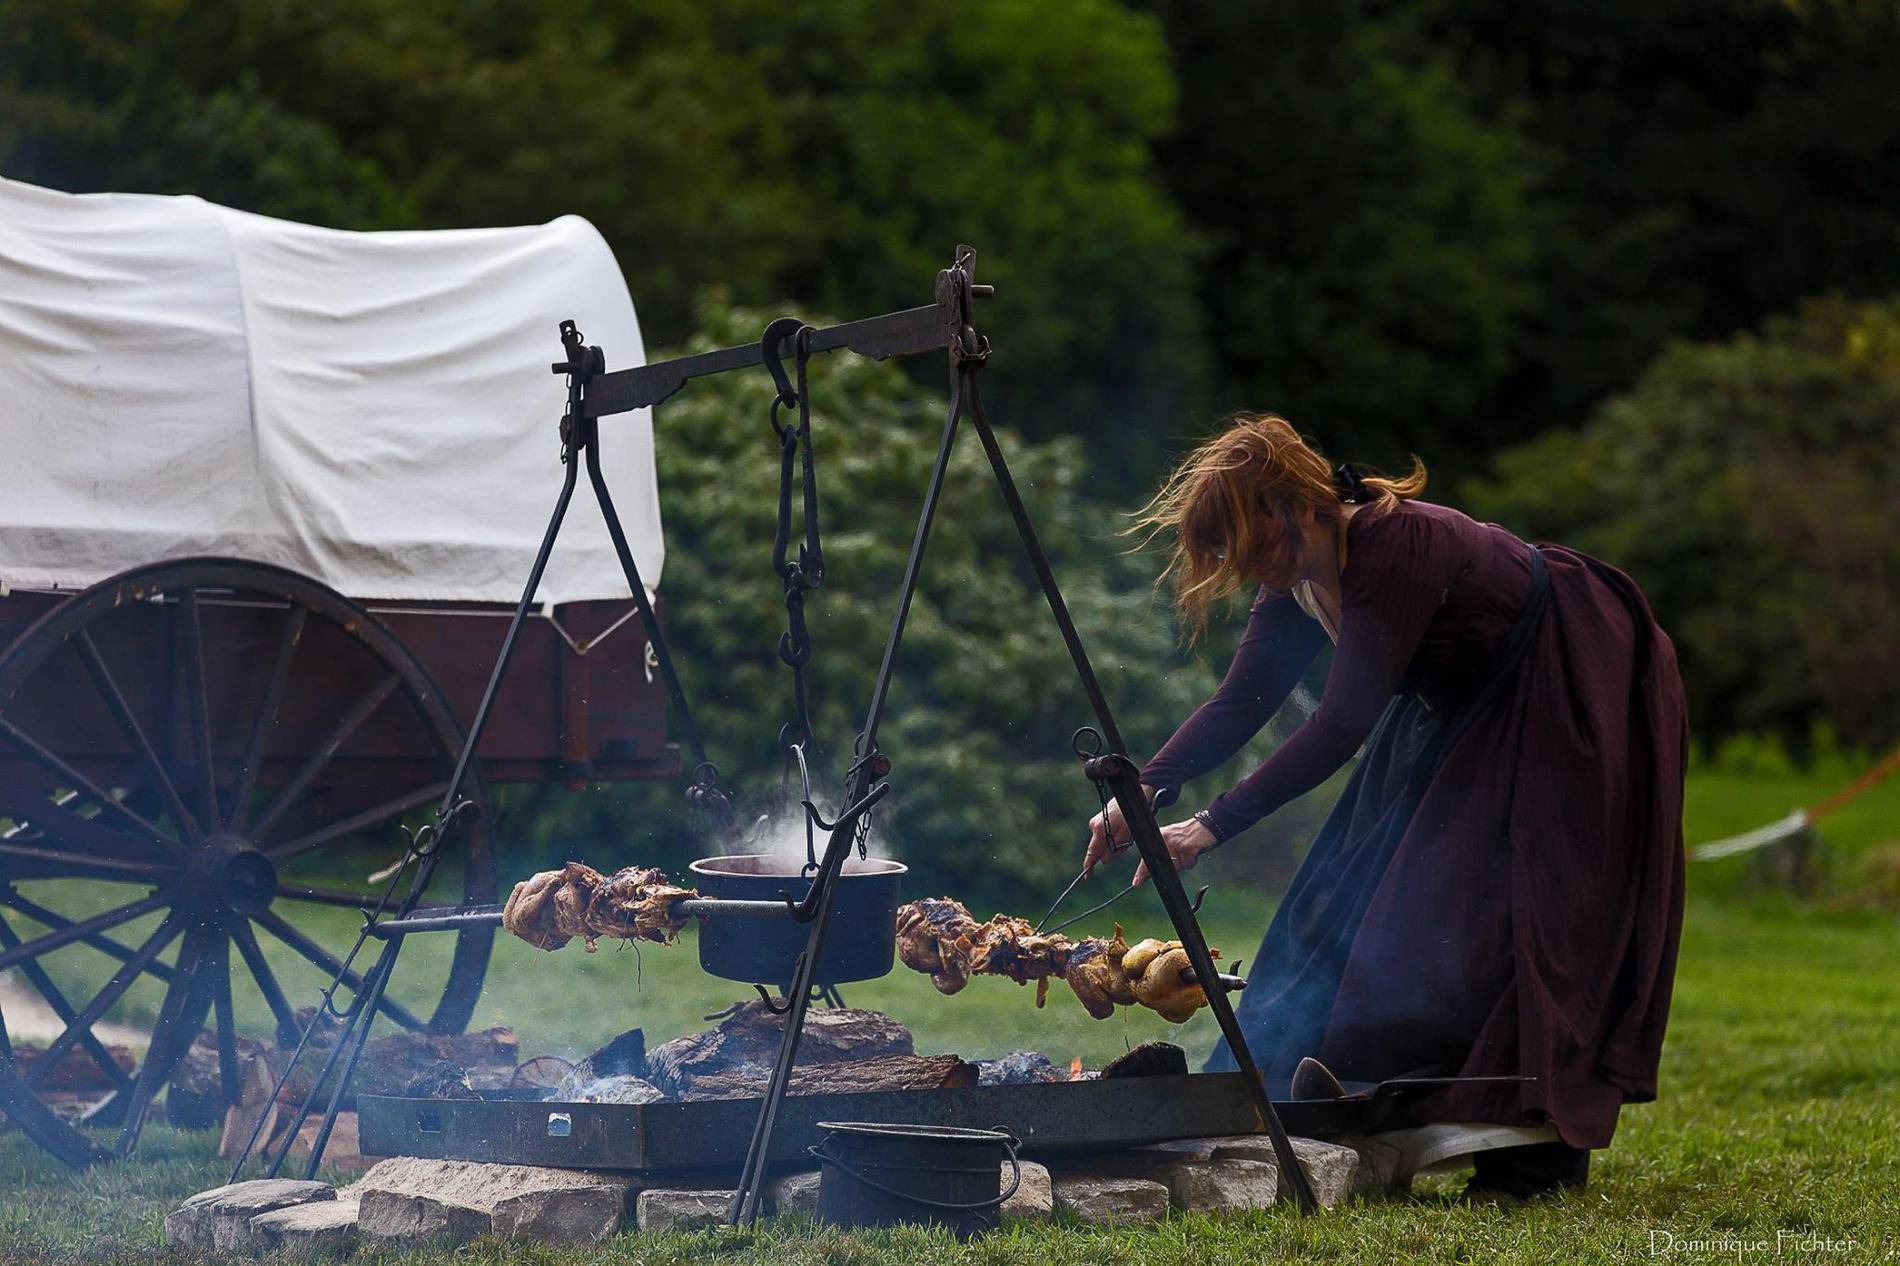 reconstitution d'une cuisine historique : charrette et tenue d'époque pour cuisiner au feu de bois